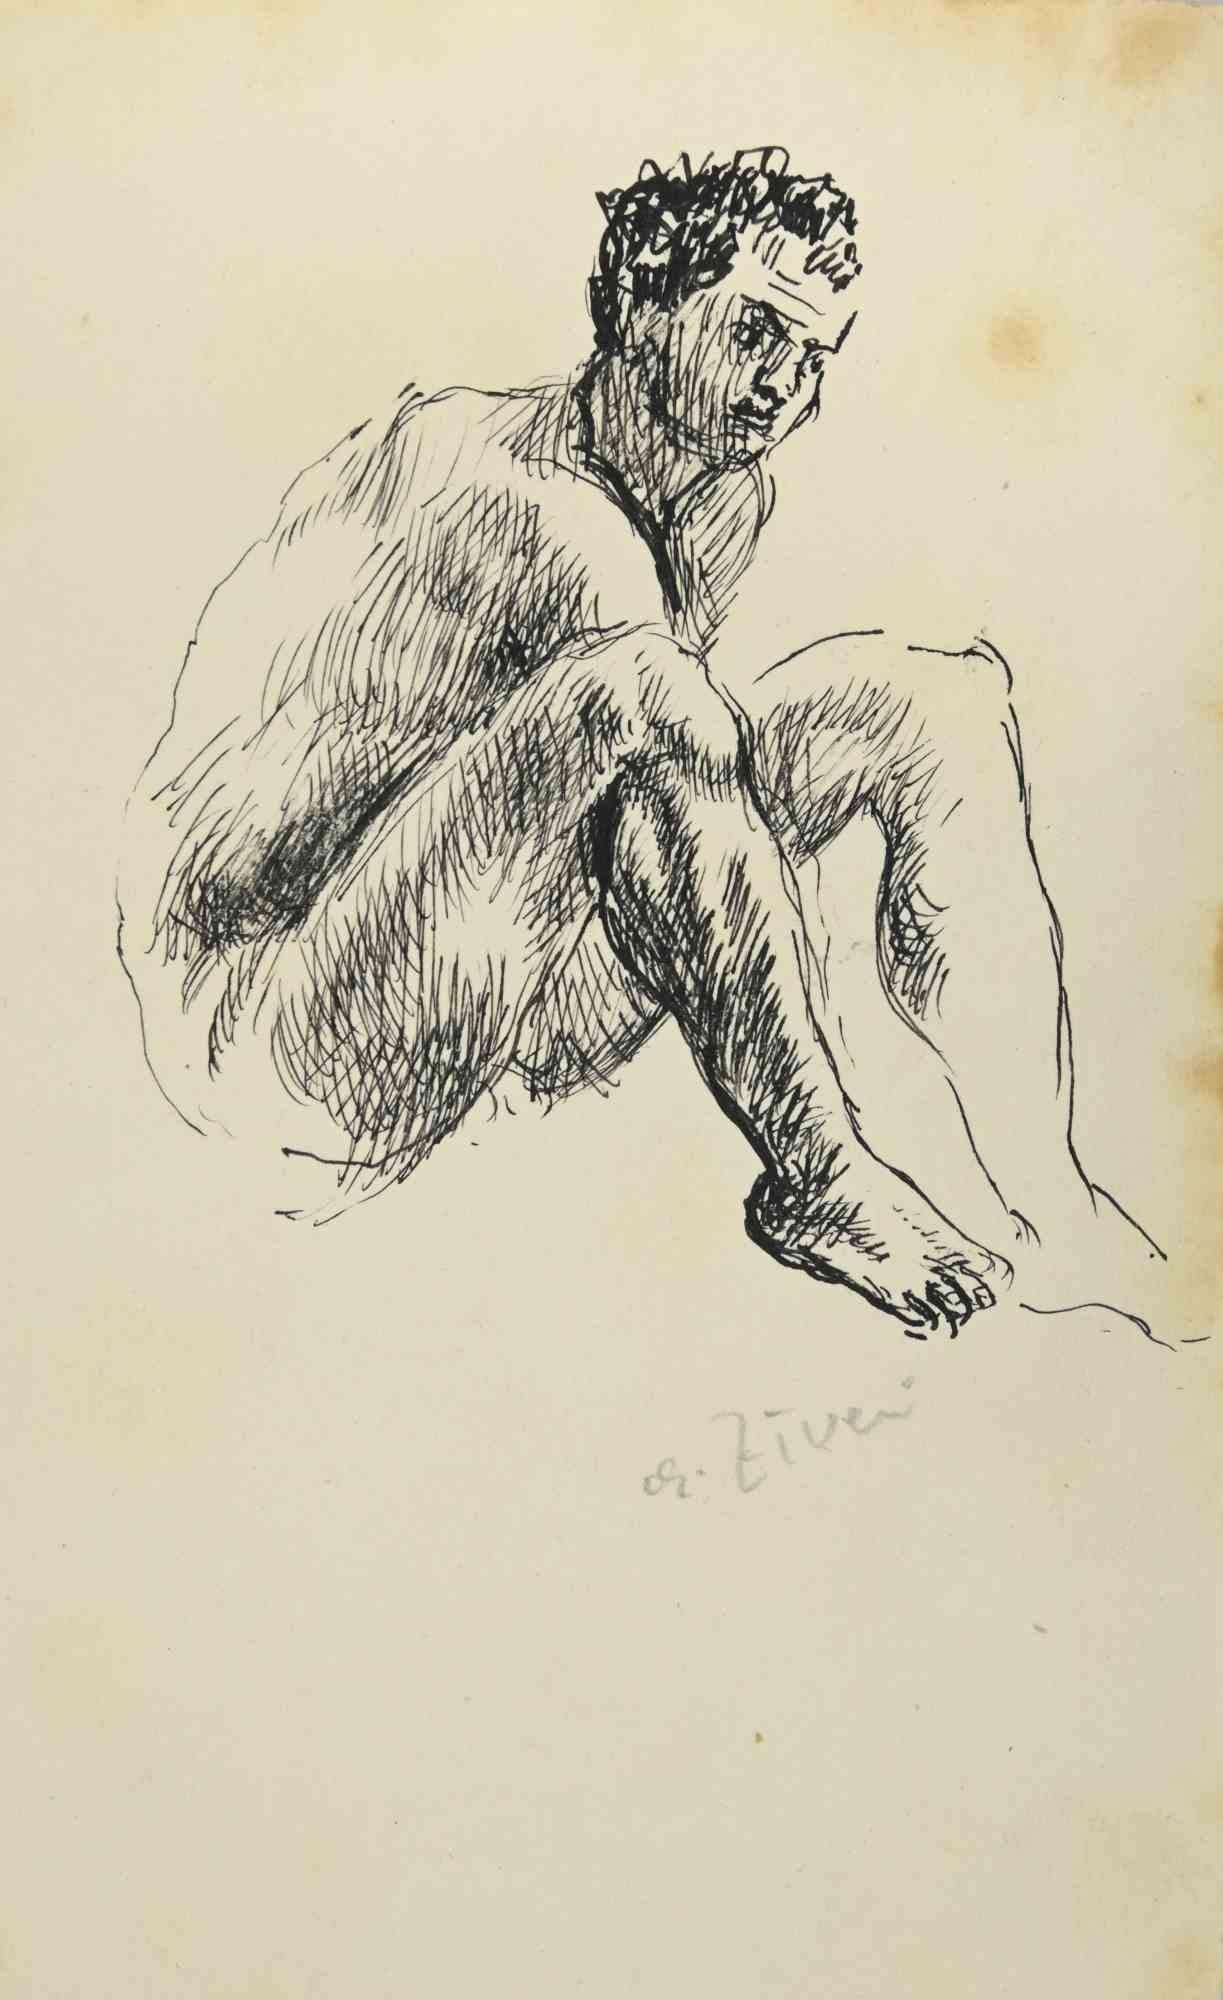 Der nackte Mann ist eine Zeichnung von Alberto Ziveri aus den 1930er Jahren.

Tinte auf Papier.

Das Kunstwerk wird durch geschickte Striche meisterhaft dargestellt.

Alberto Ziveri (Rom, 1908 - 1990), der italienische Maler der römischen Schule,